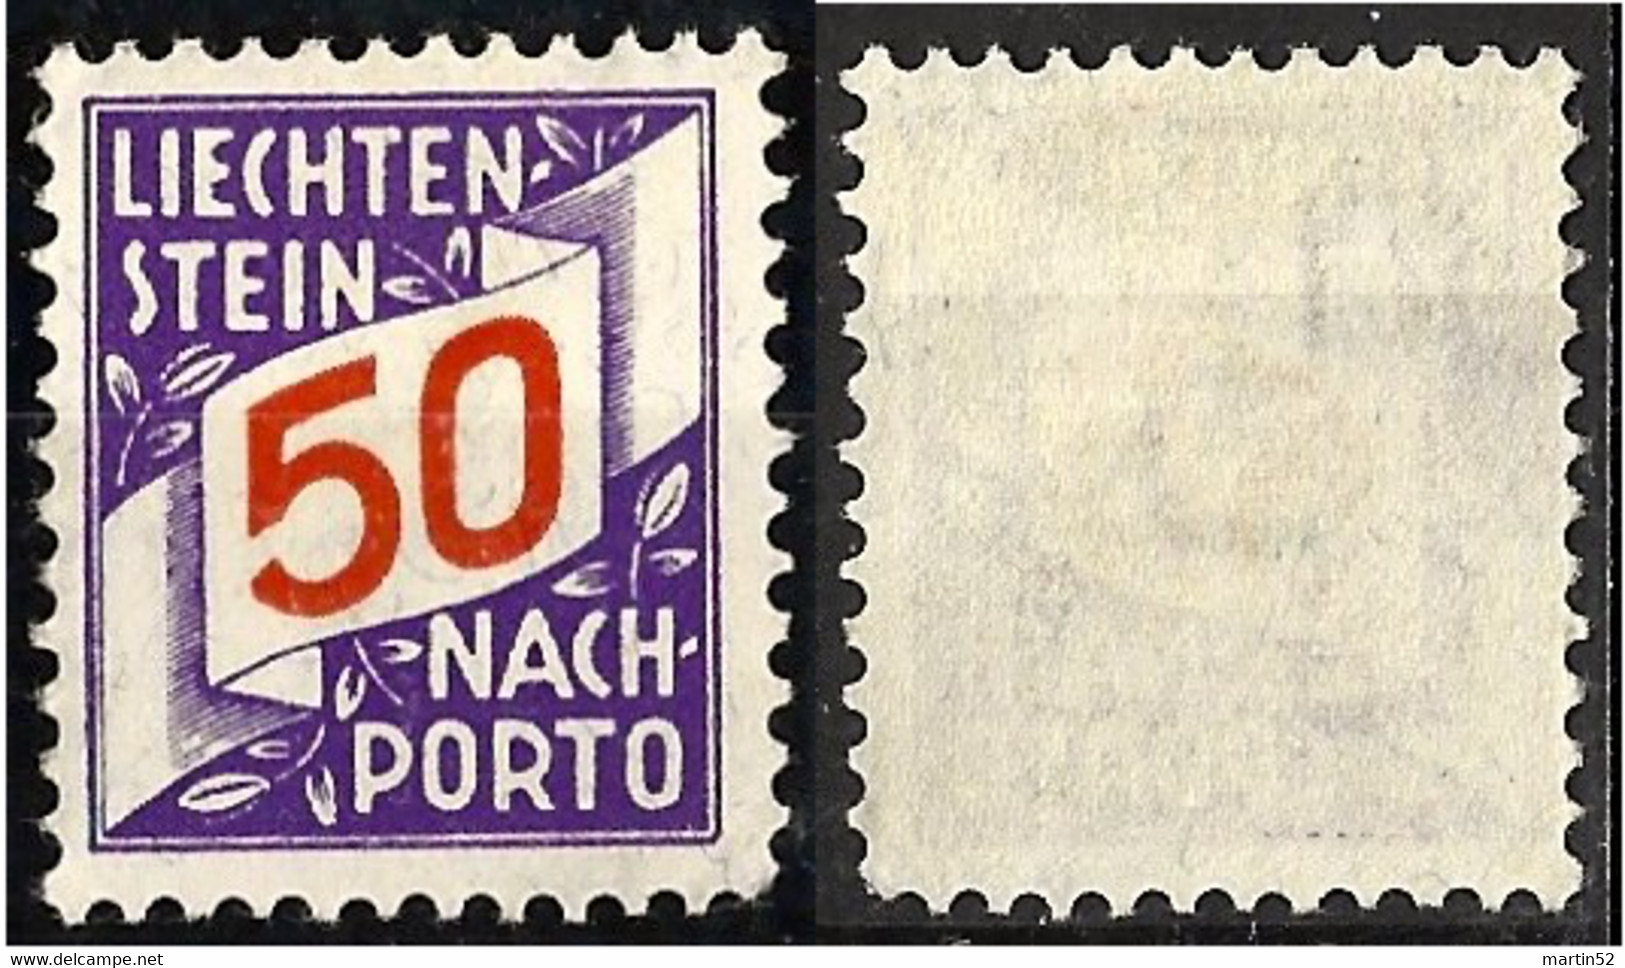 Liechtenstein 1928: ERSTE NACHPORTO-Marke N° 20 (50 Rp) In Schweizer Währung ** Postfrisch MNH (Zu CHF 45.00) - Impuesto